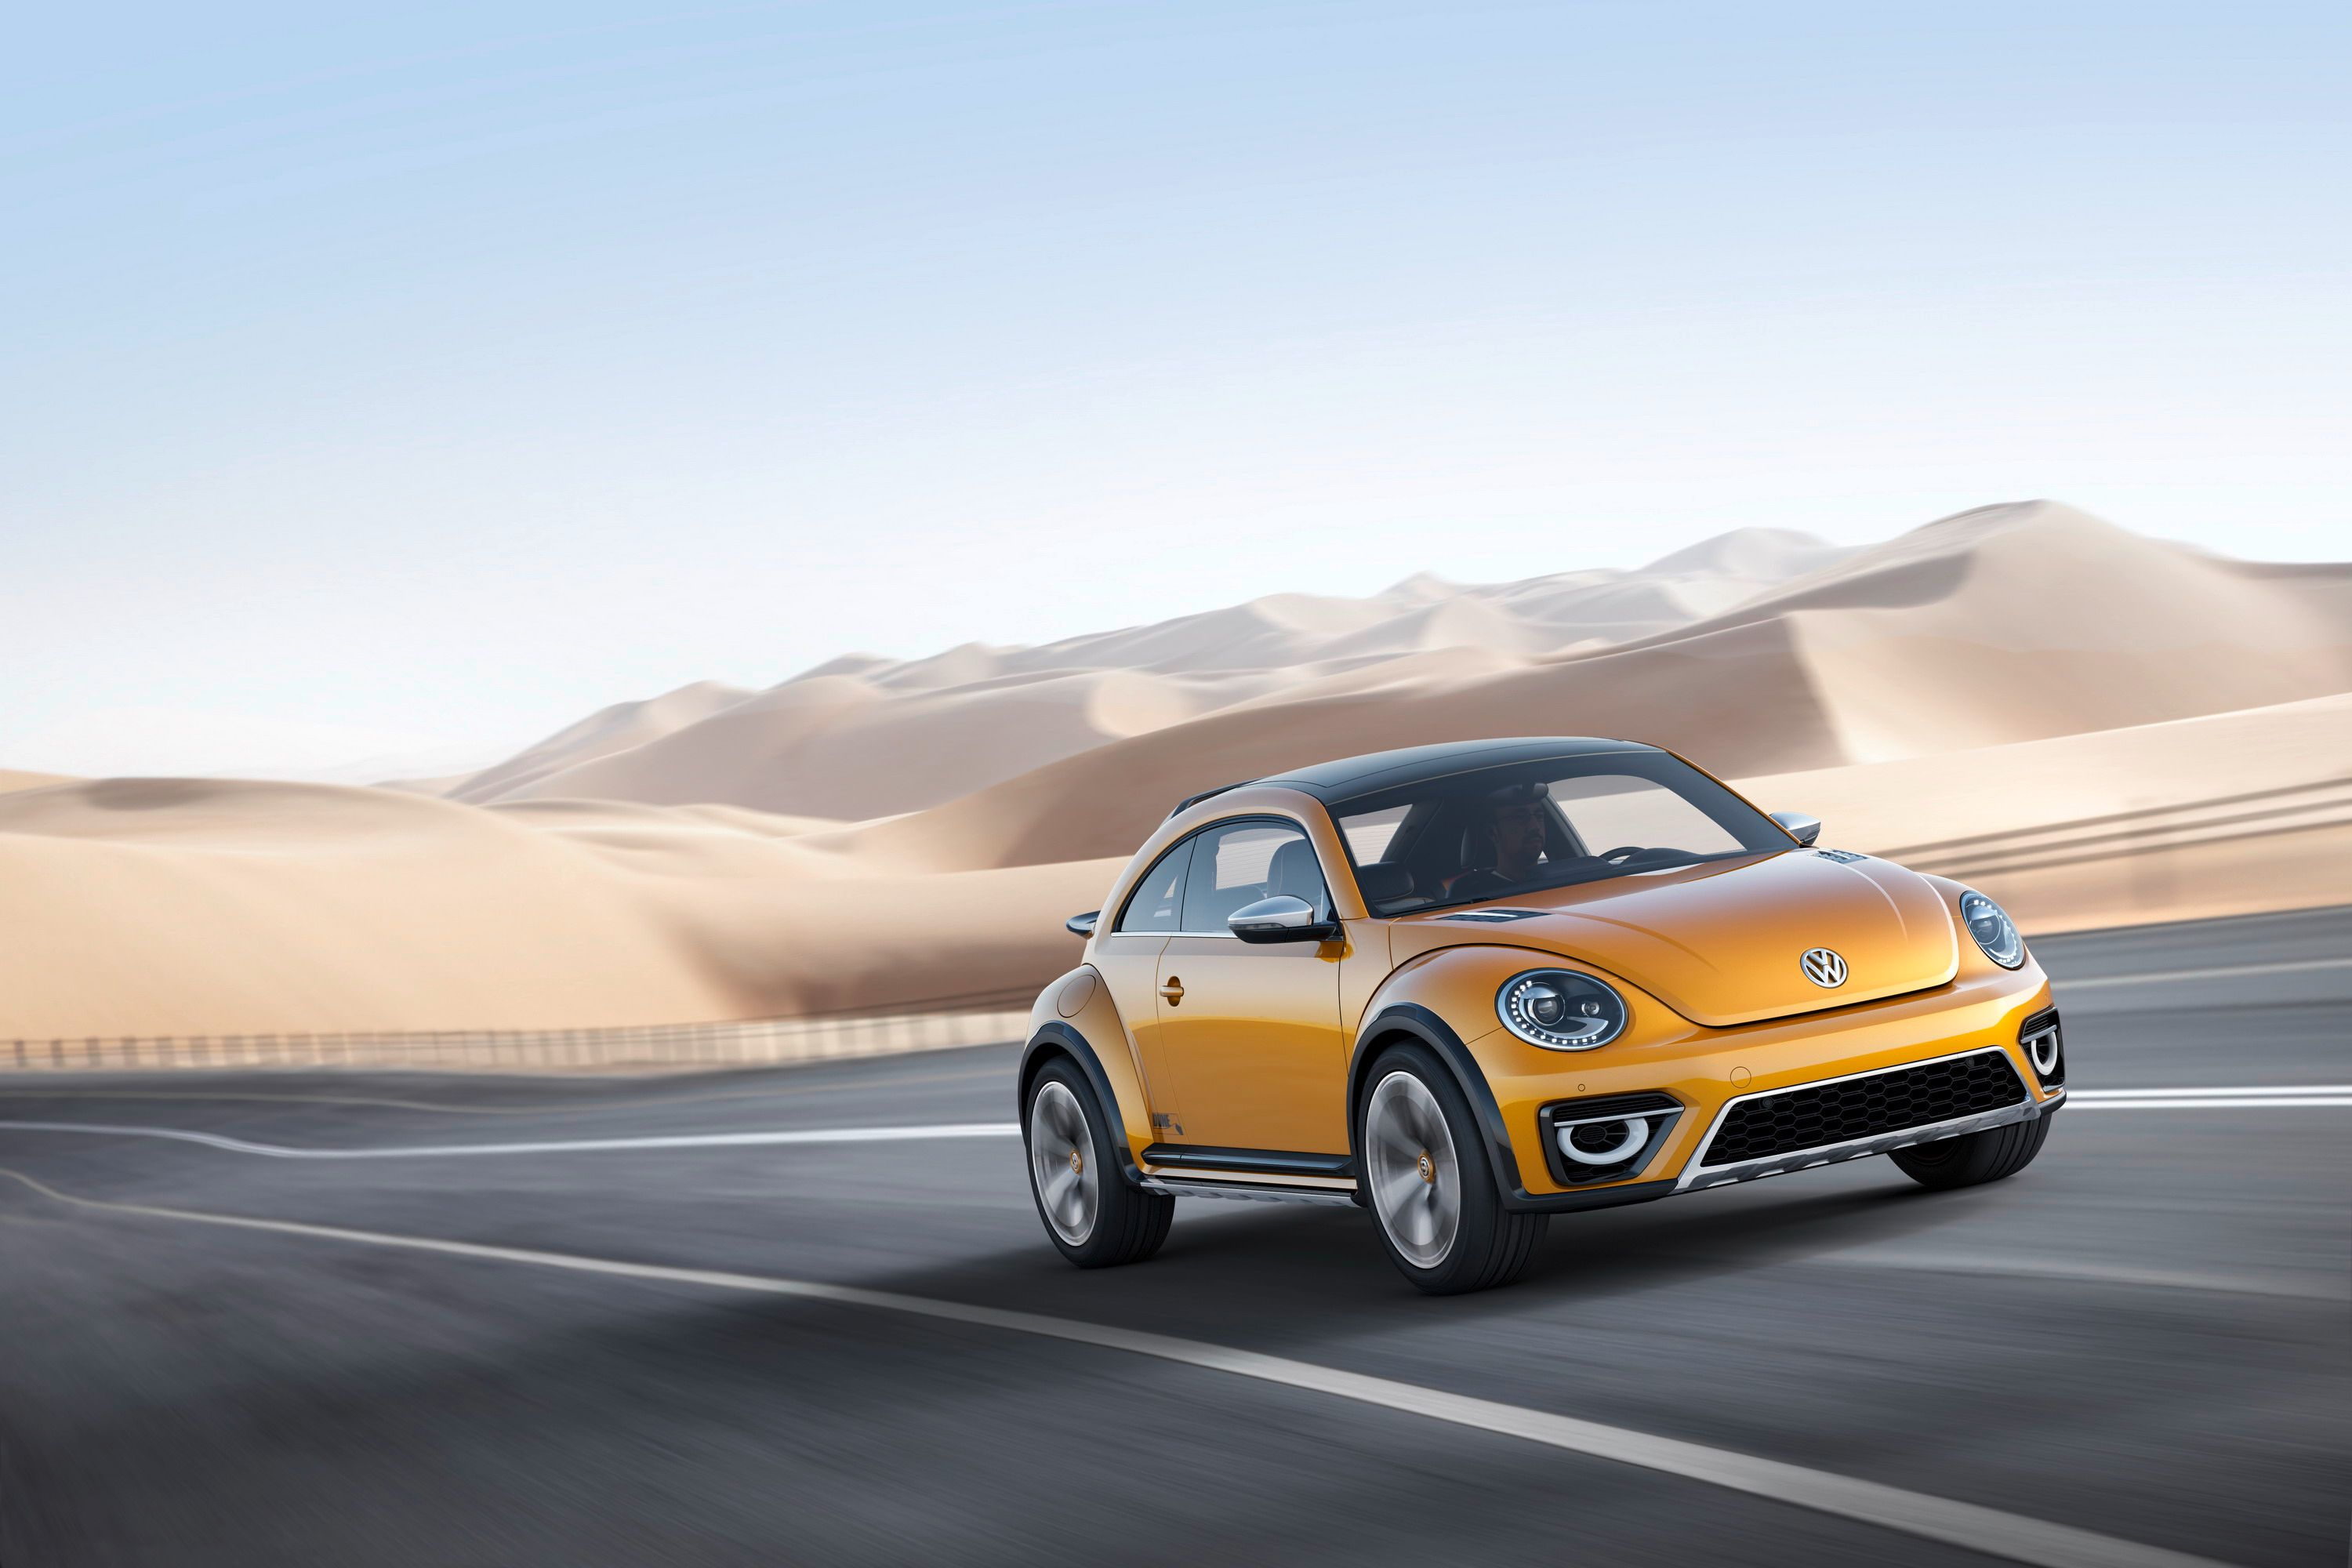 2014 Volkswagen New Beetle Dune Concept